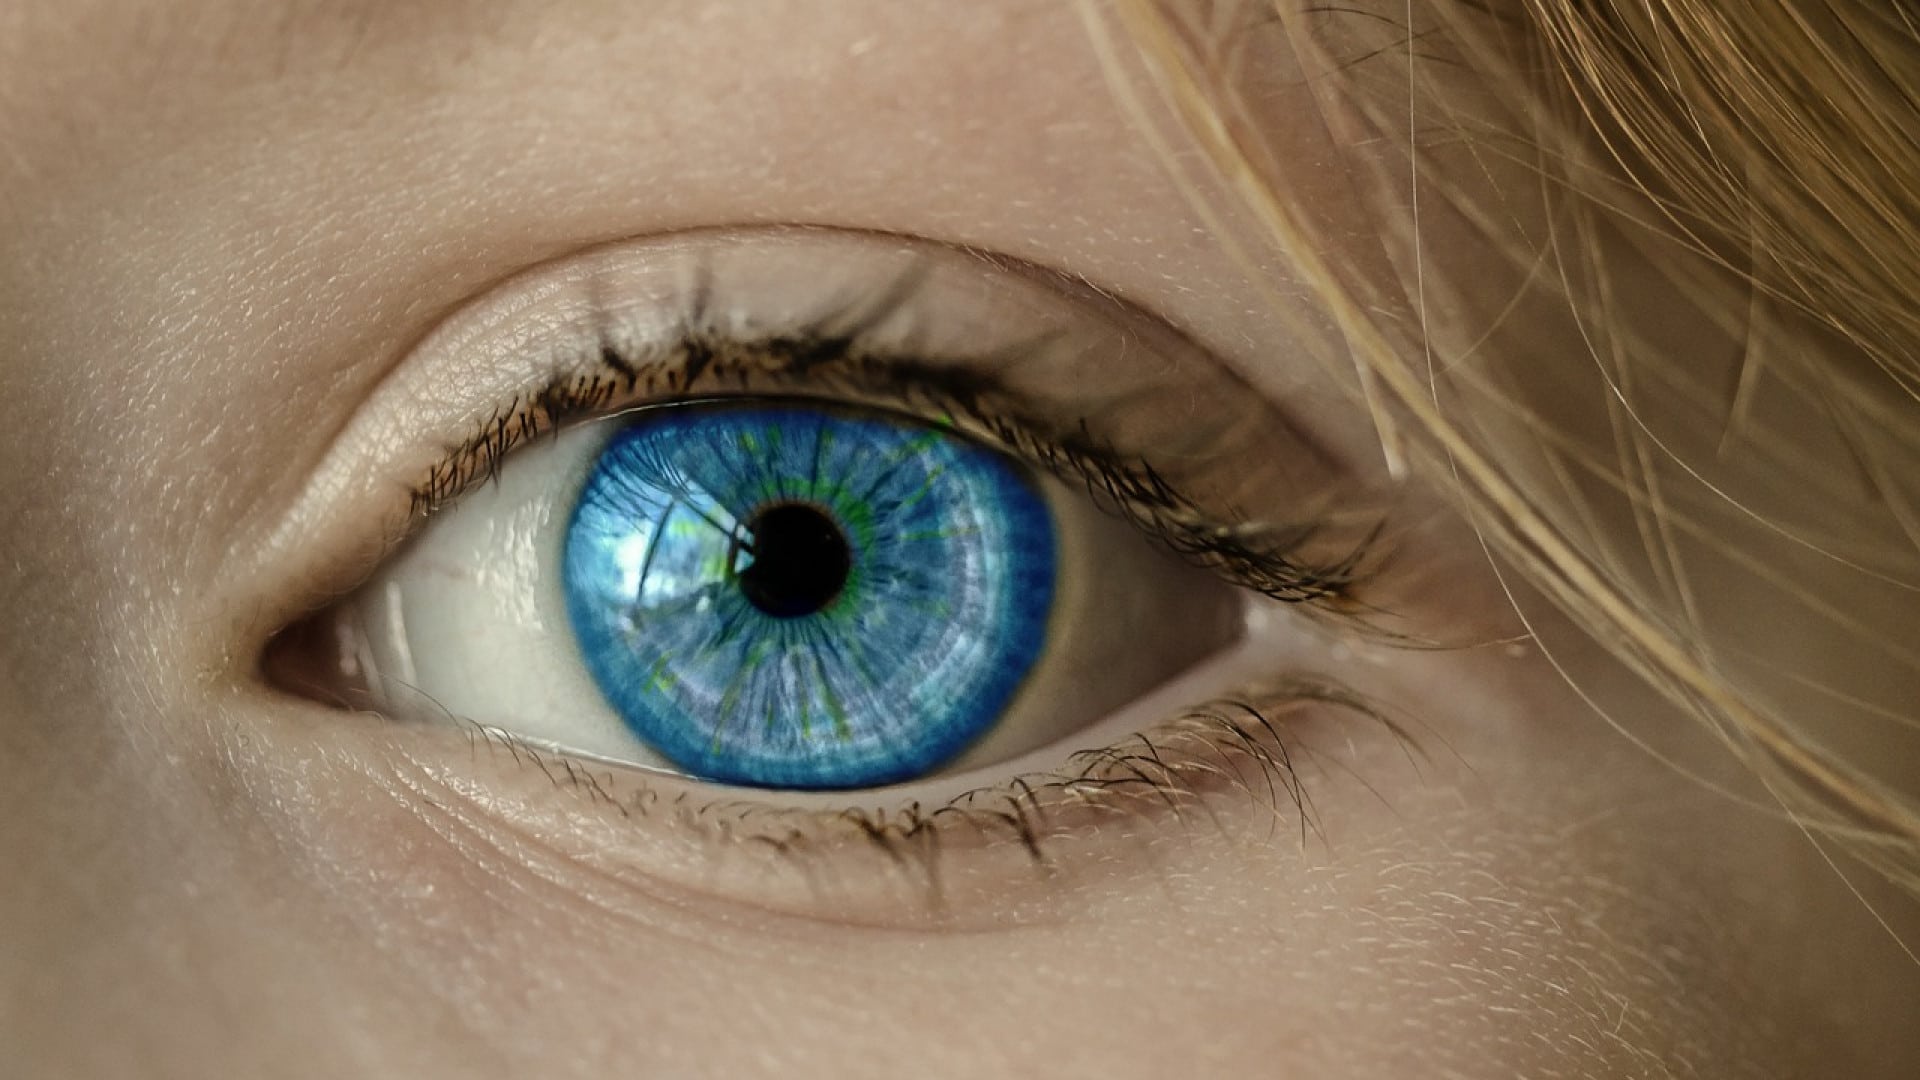 Gros plan d'un œil humain bleu avec des détails sur l'iris, les cils, la texture de la peau et les lentilles de contact visibles.